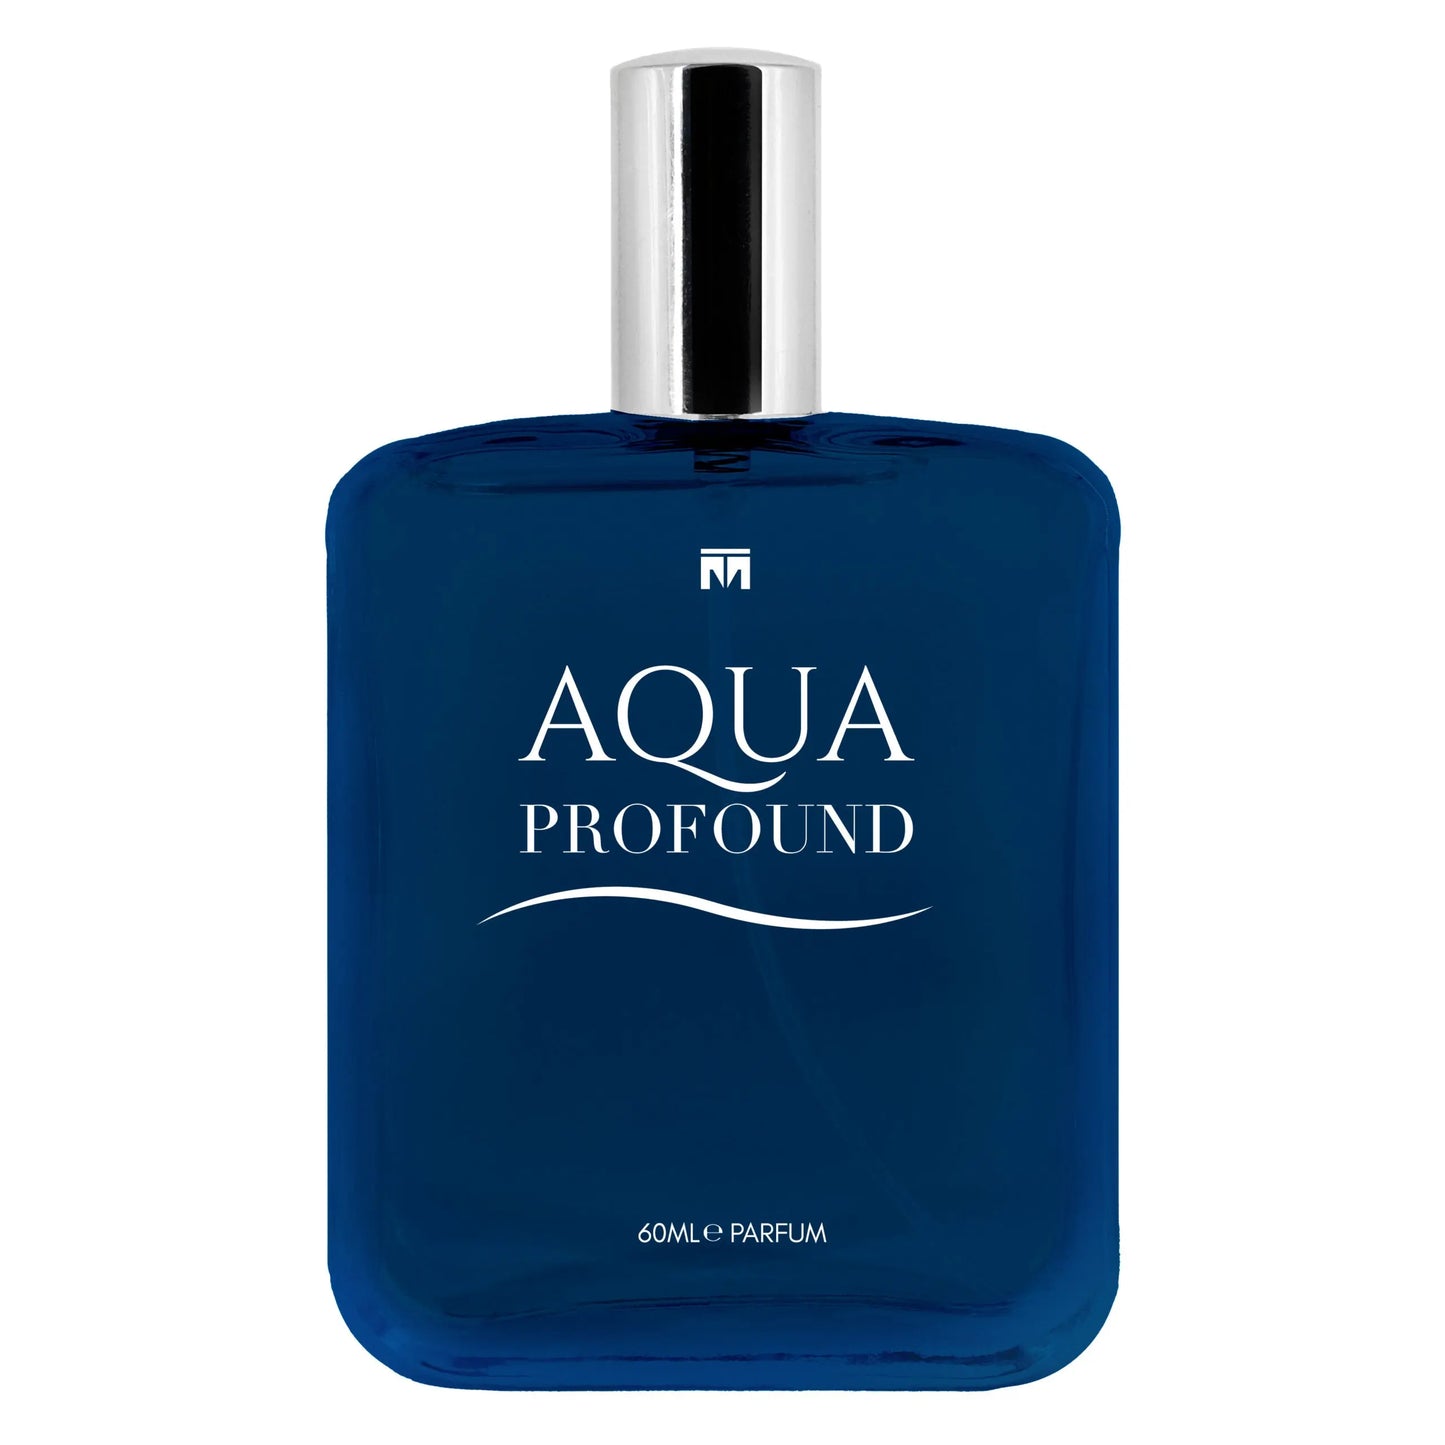 Aqua Profound Classic - 60ml Eau De Parfum - Dapper Industries SA